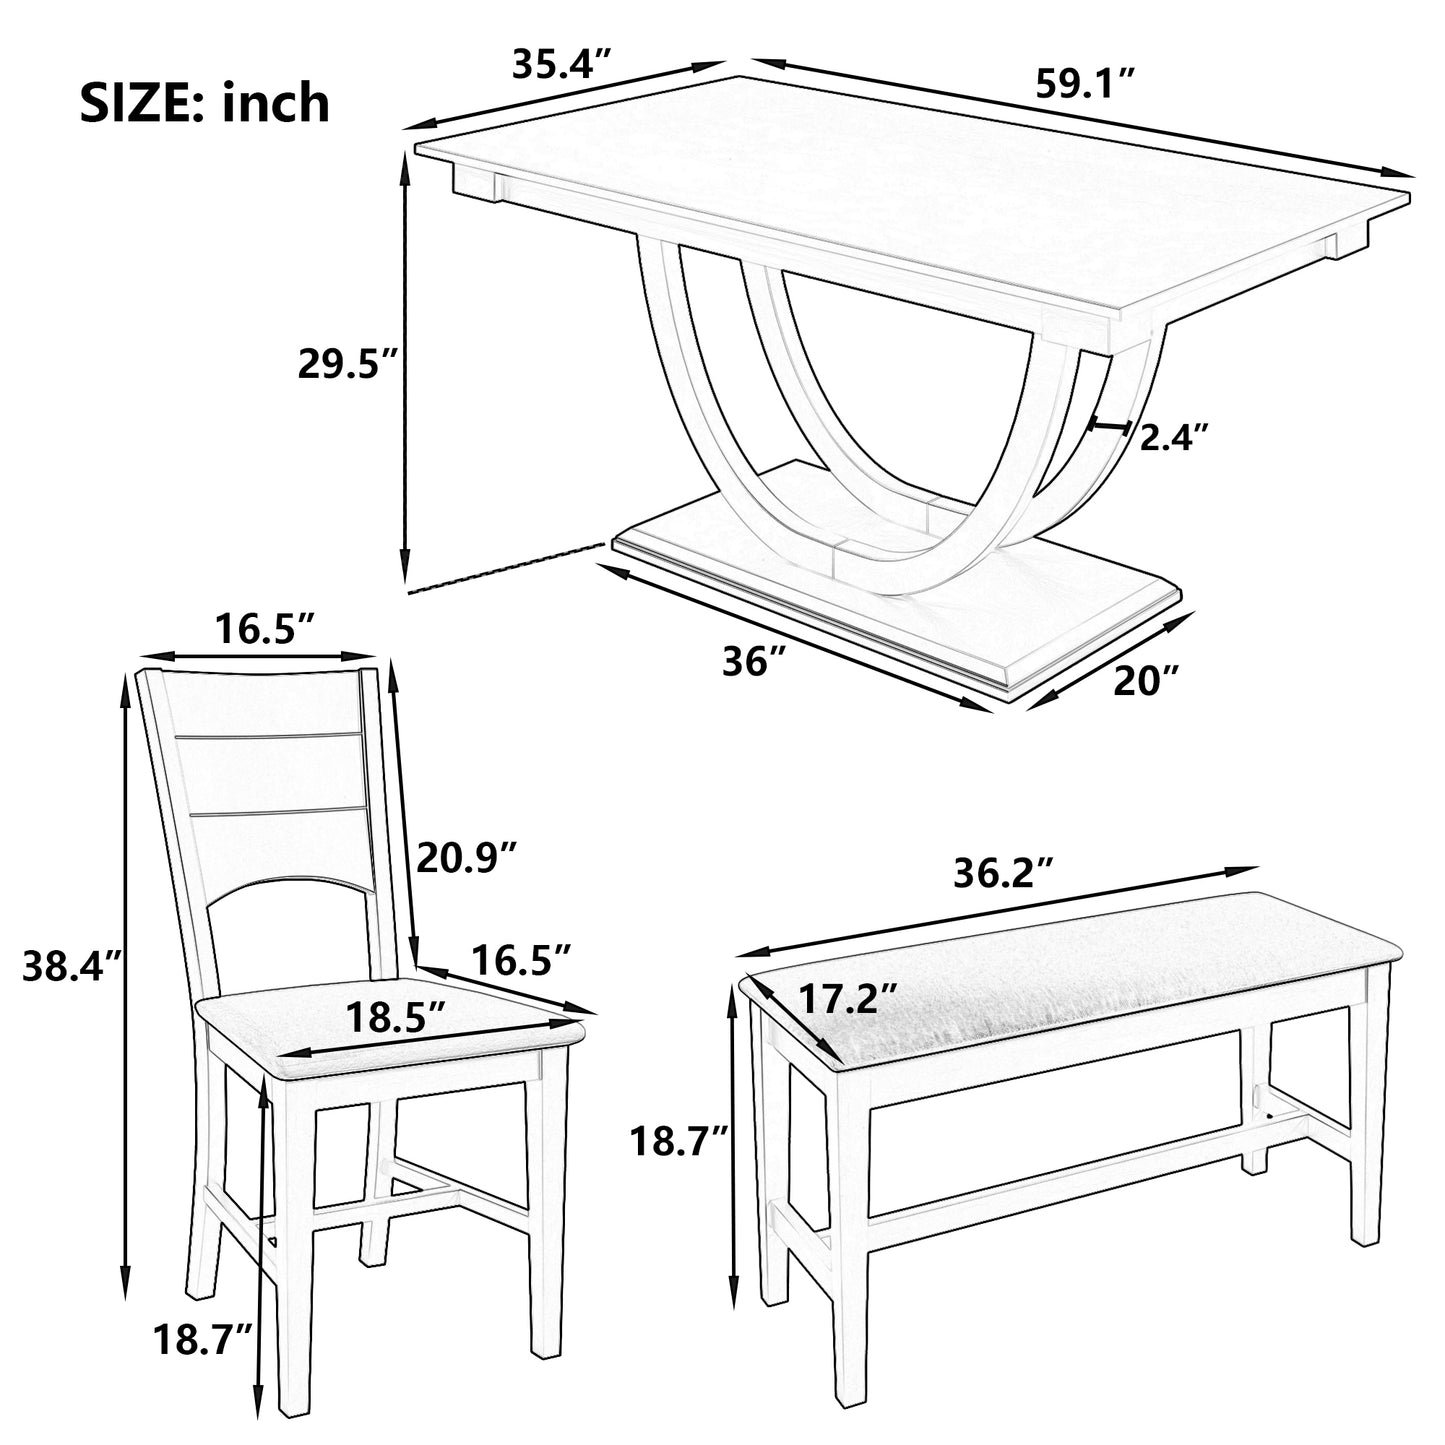 TOPMAX 6-teiliges halbrundes Esstisch-Set aus Holz, Küchentisch-Set mit langer Bank und 4 Esszimmerstühlen, moderner Stil, natürlich